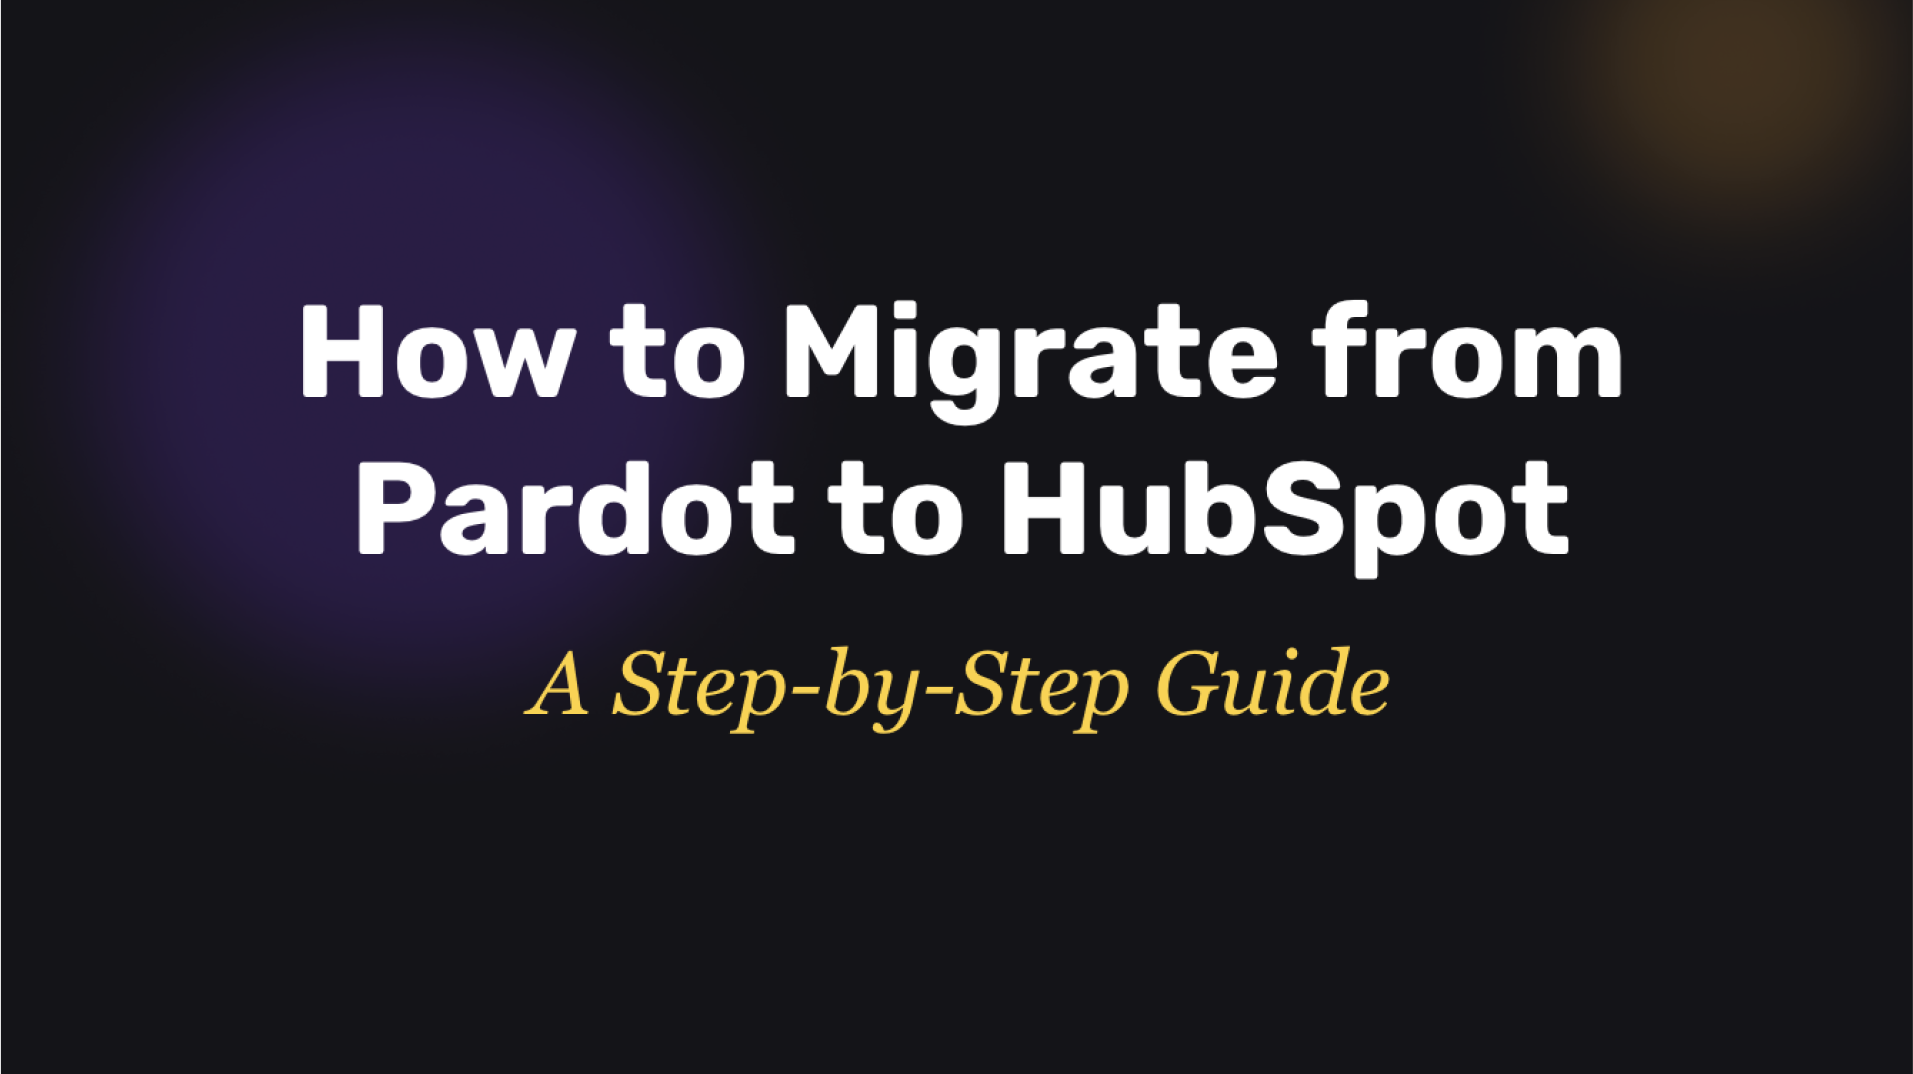 Pardot - Guide - Feature Image